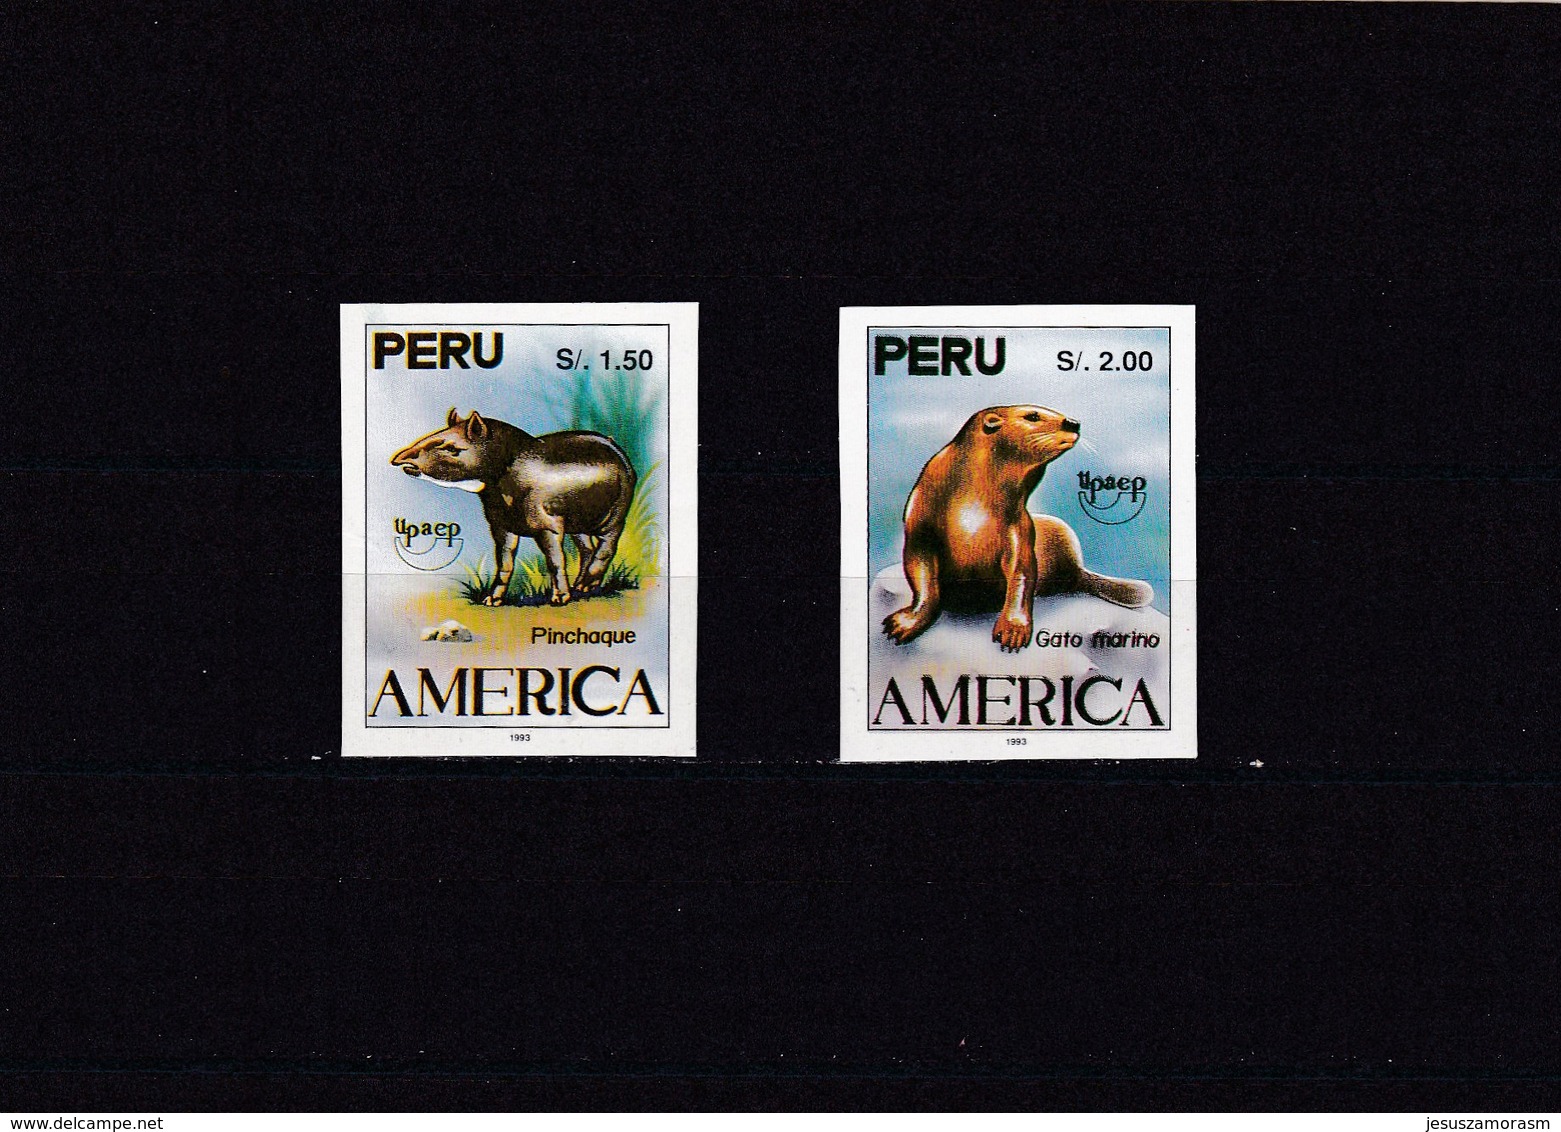 Peru SIN DENTAR - Perú